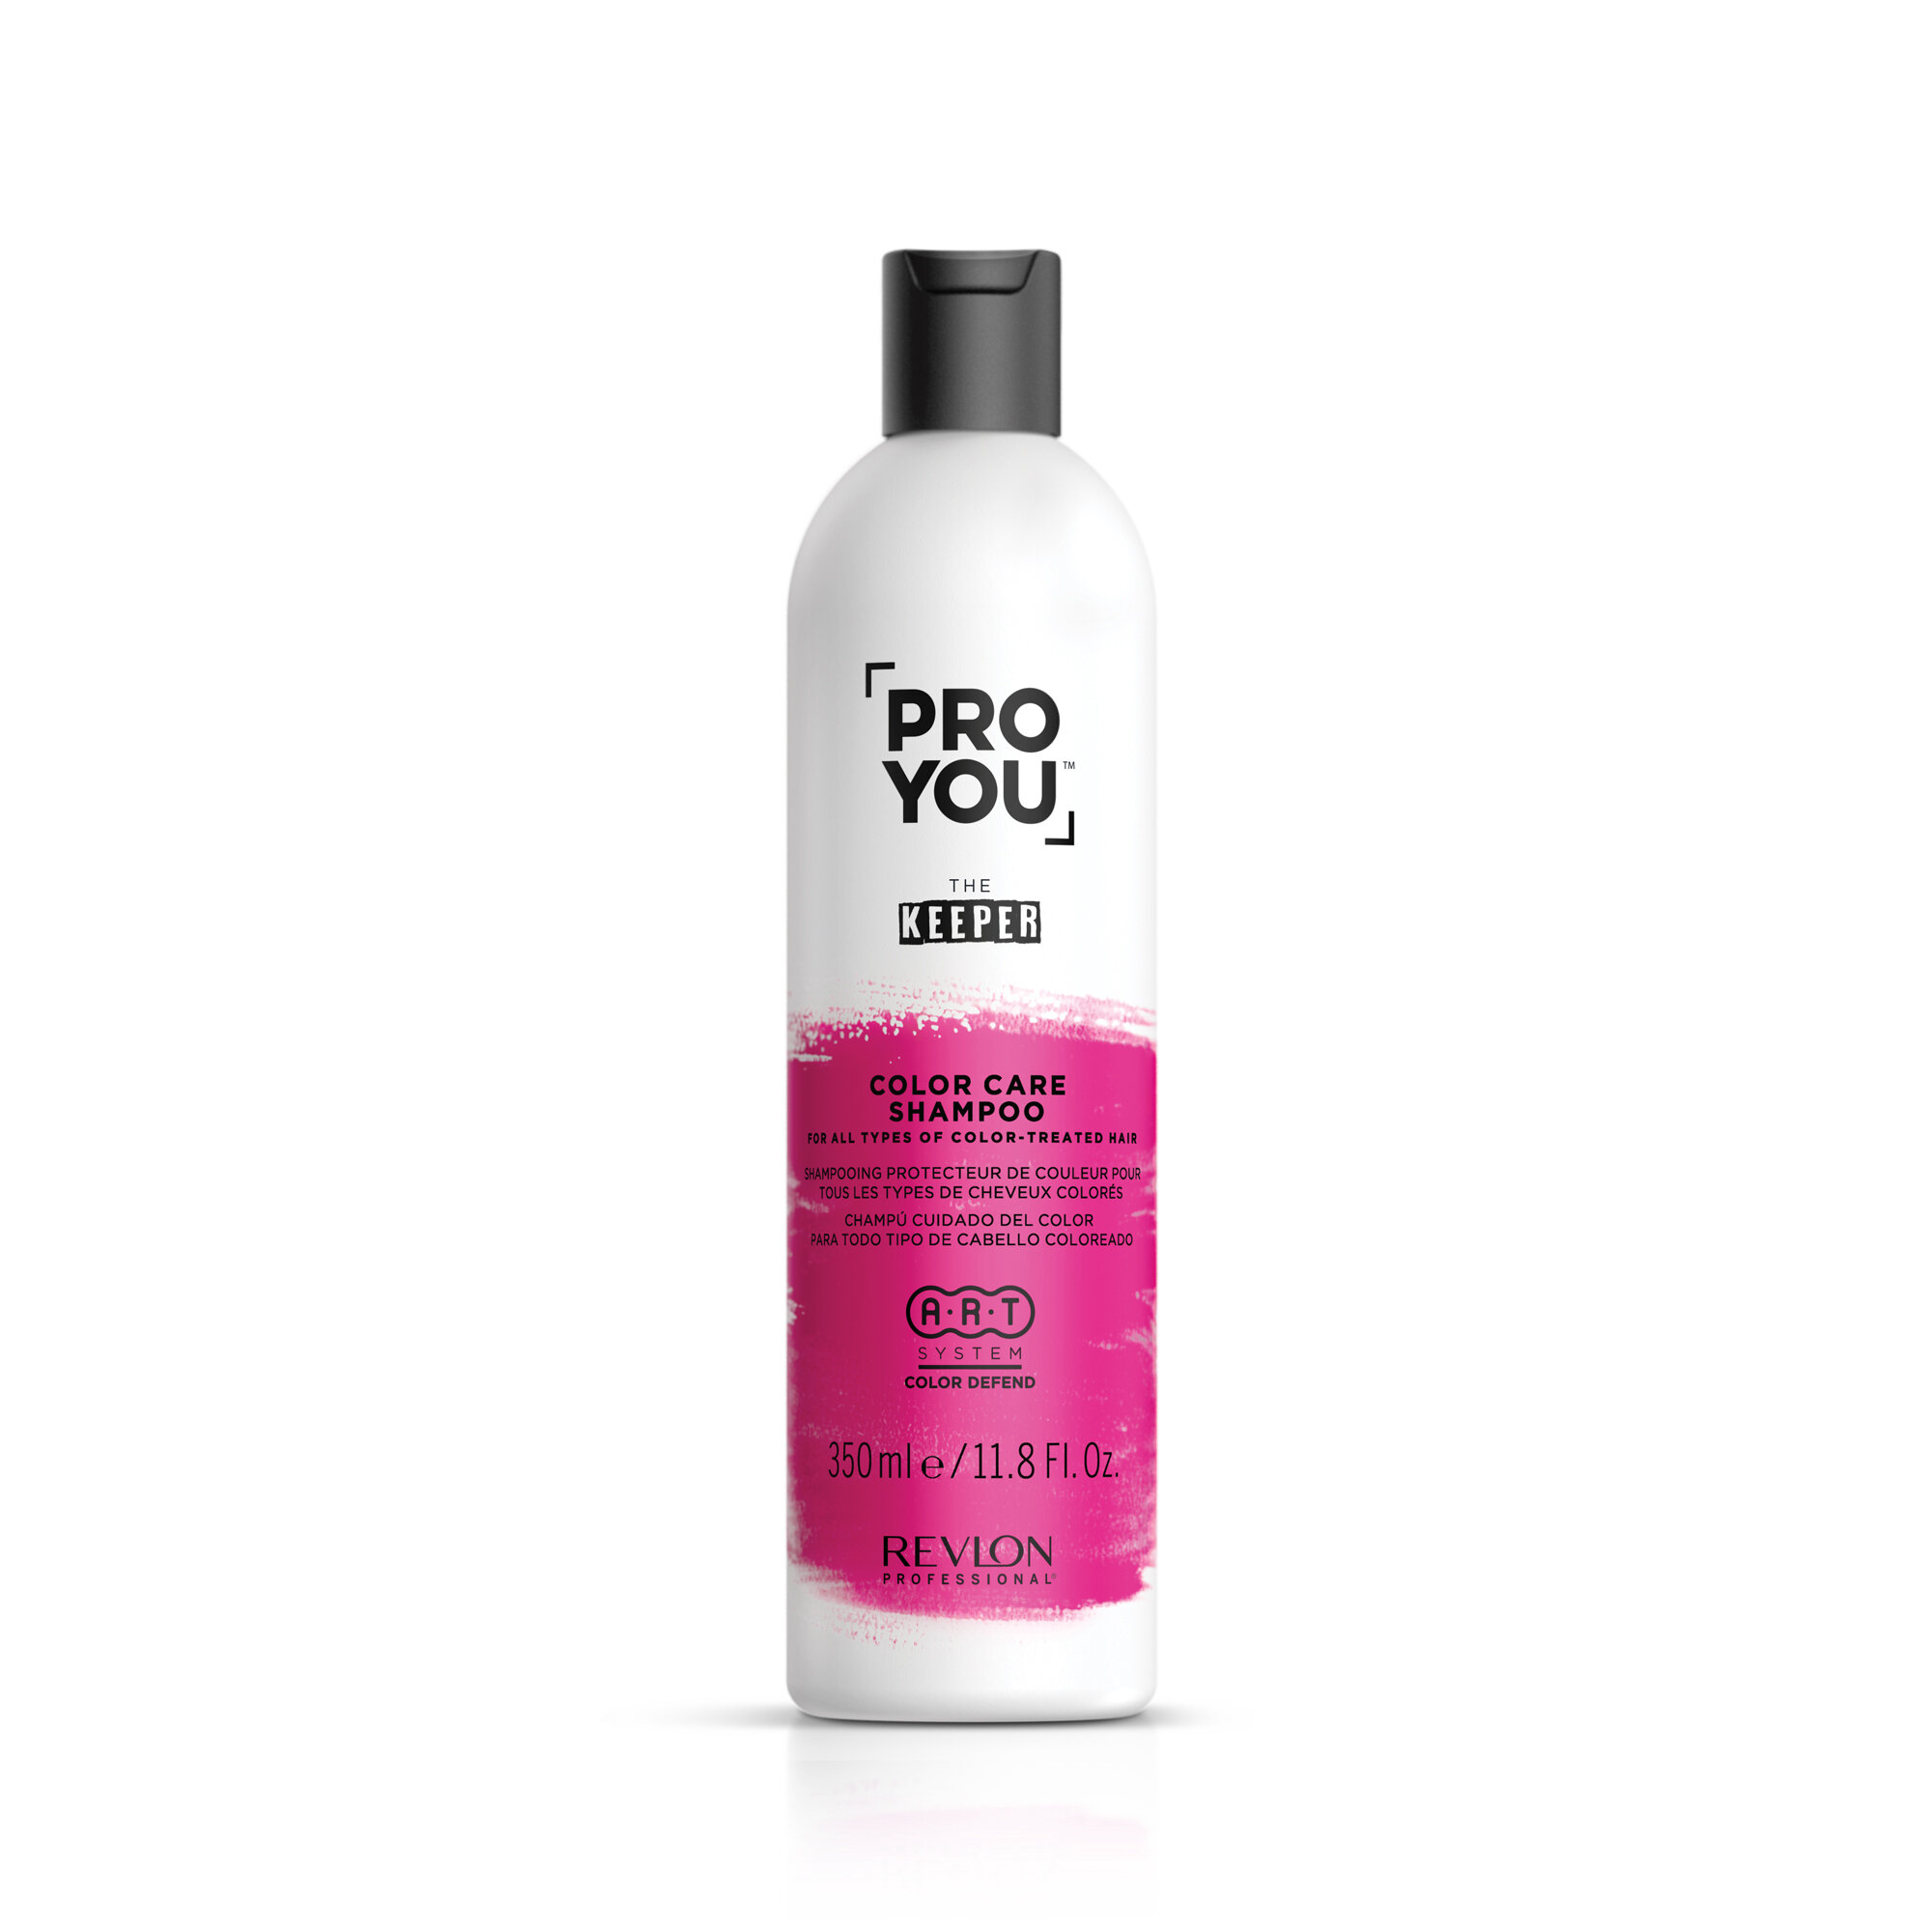 Revlon Professional Шампунь защита цвета для всех типов окрашенных волос PRO YOU KEEPER Color Care Shampoo, 350 мл